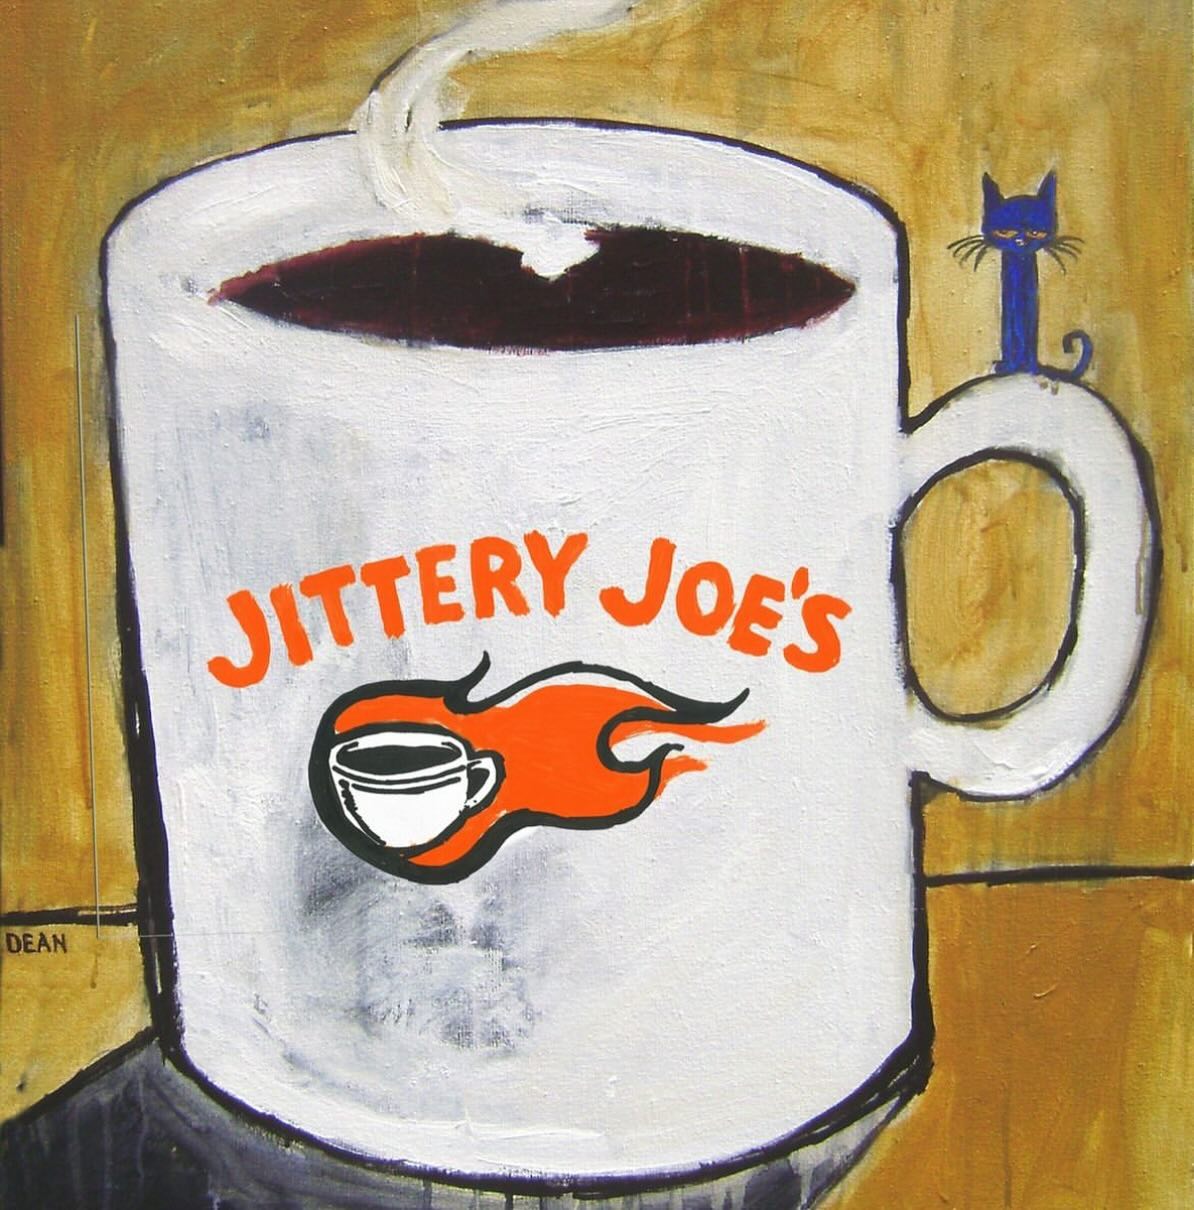 Jittery Joe's Coffee - Alps Village